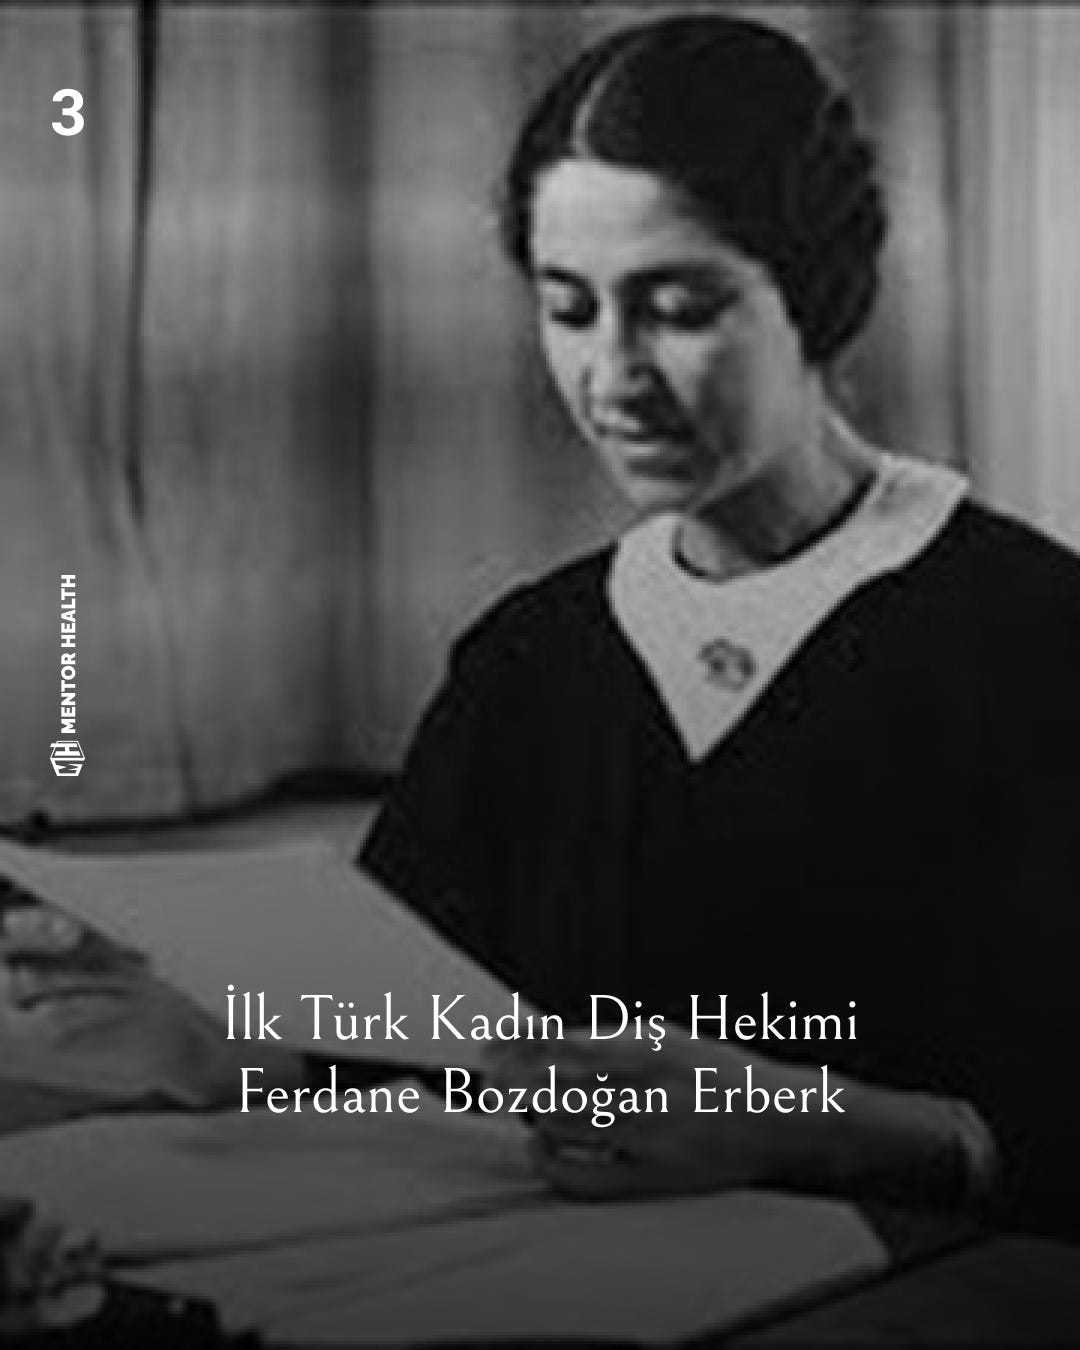 ilk türk kadın diş hekimi ferdane bozdoğan erberk'in fotoğrafı